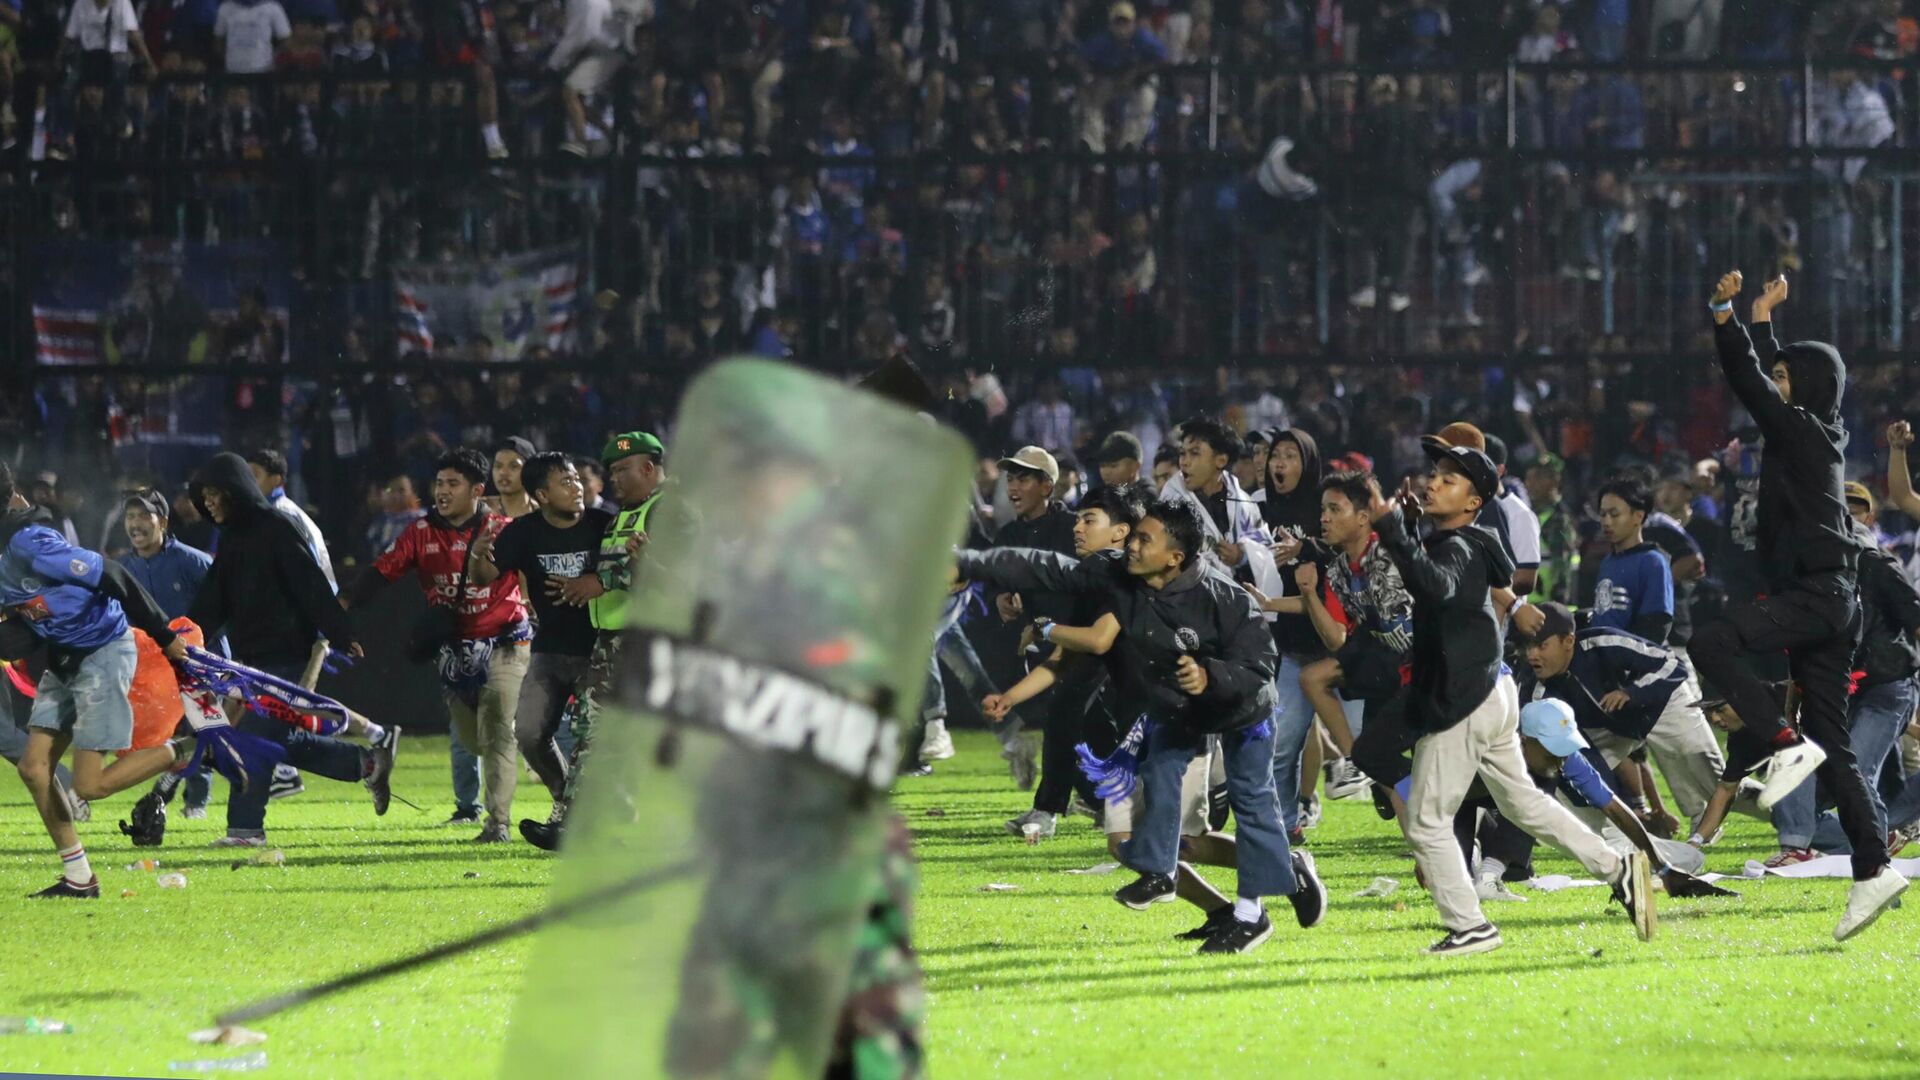 Футбольные болельщики выходят на поле во время столкновения между болельщиками на стадионе Канжурухан в Маланге, Индонезия. 1 октября 2022 года - Sputnik Кыргызстан, 1920, 02.10.2022